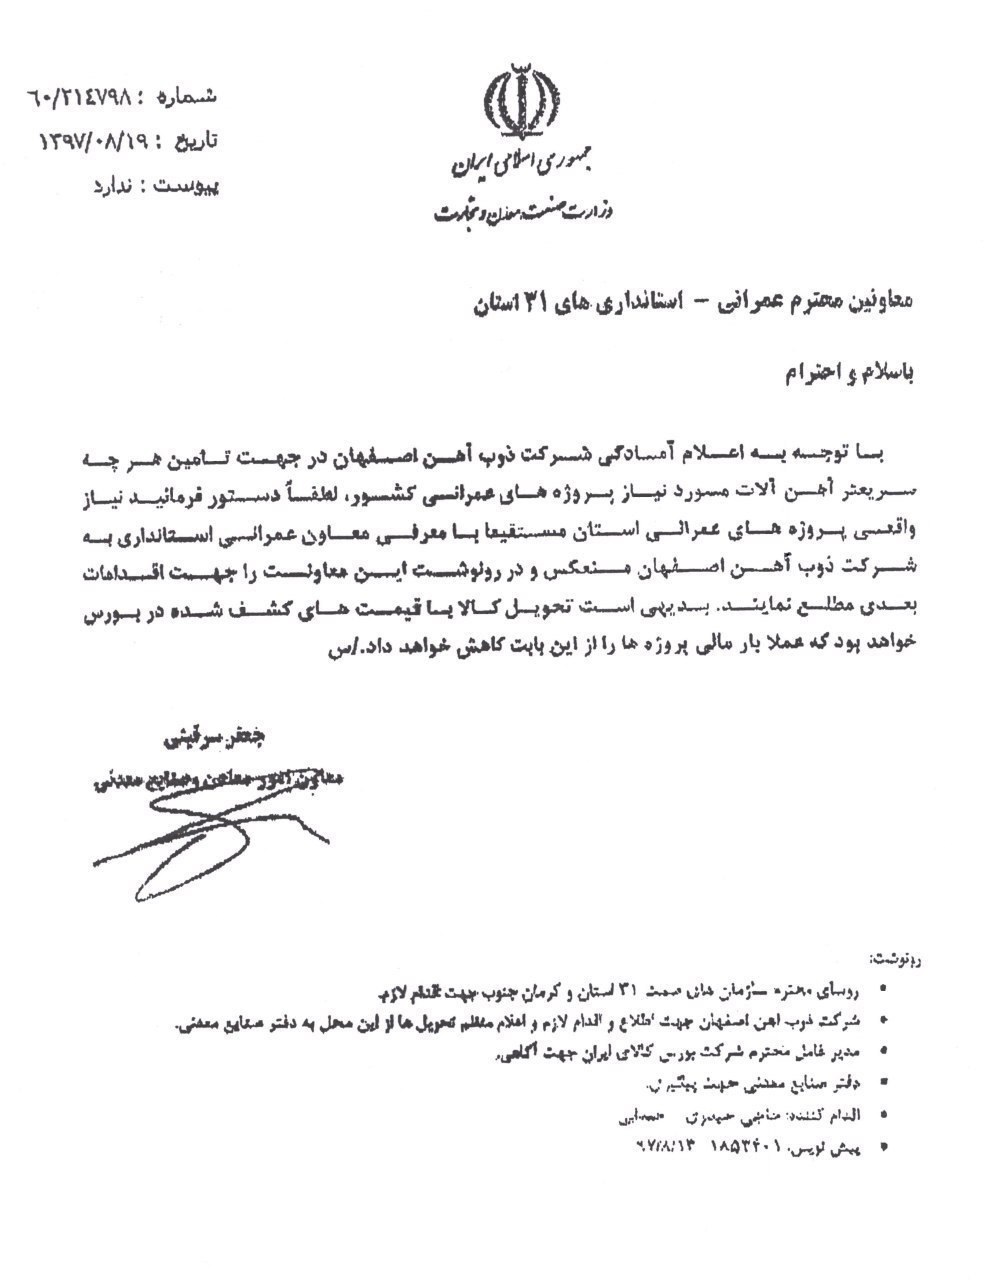 مجوز فروش محصولات ذوب آهن اصفهان در خارج از بورس کالا صادر شد